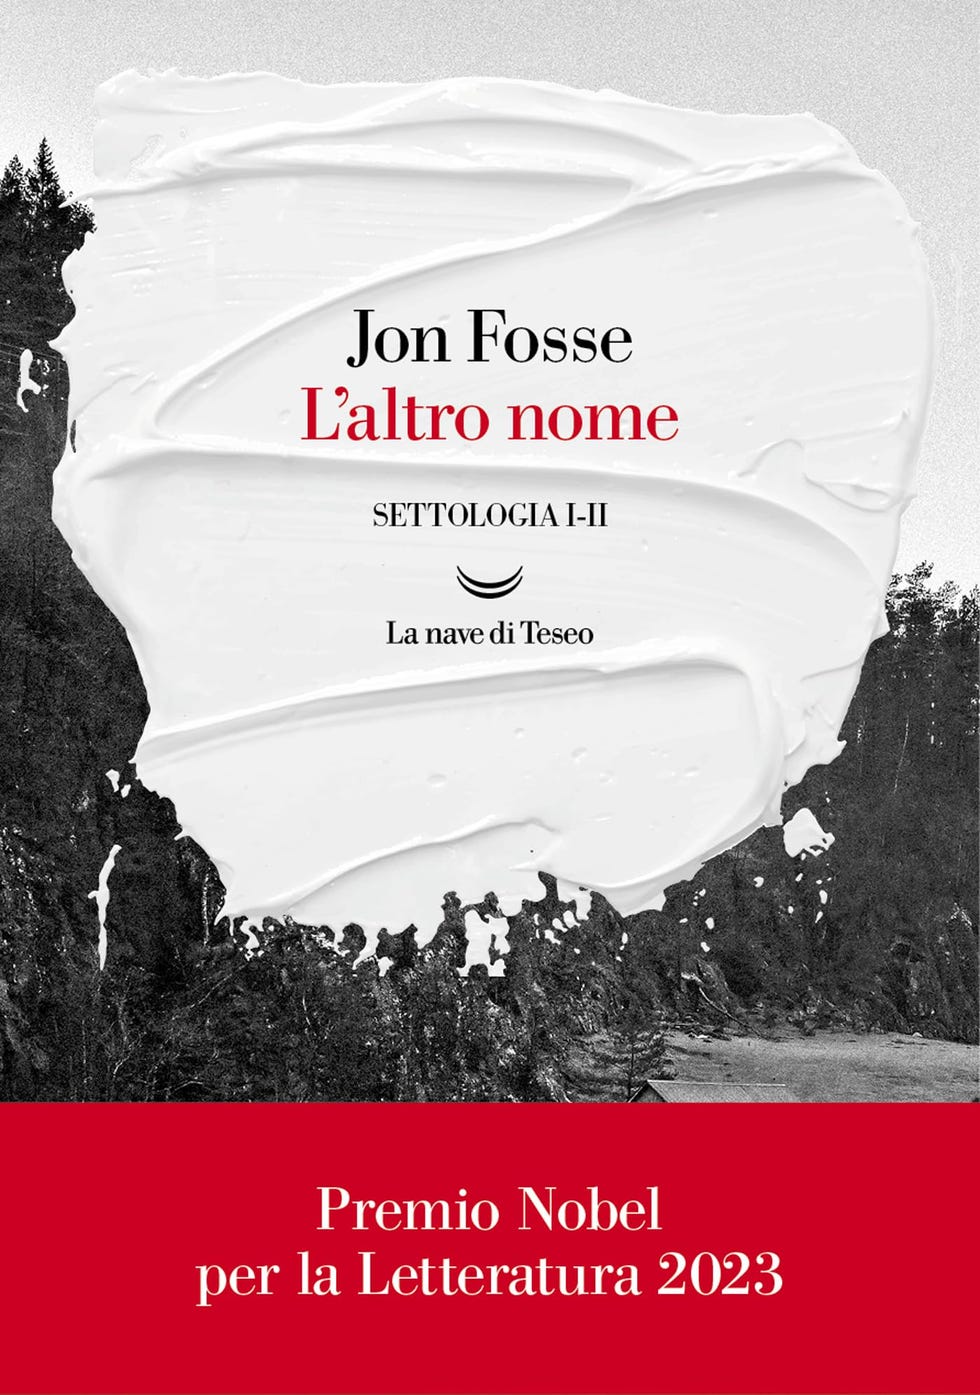 Premio Nobel Letteratura 2023 a Jon Fosse, i libri da leggere ora